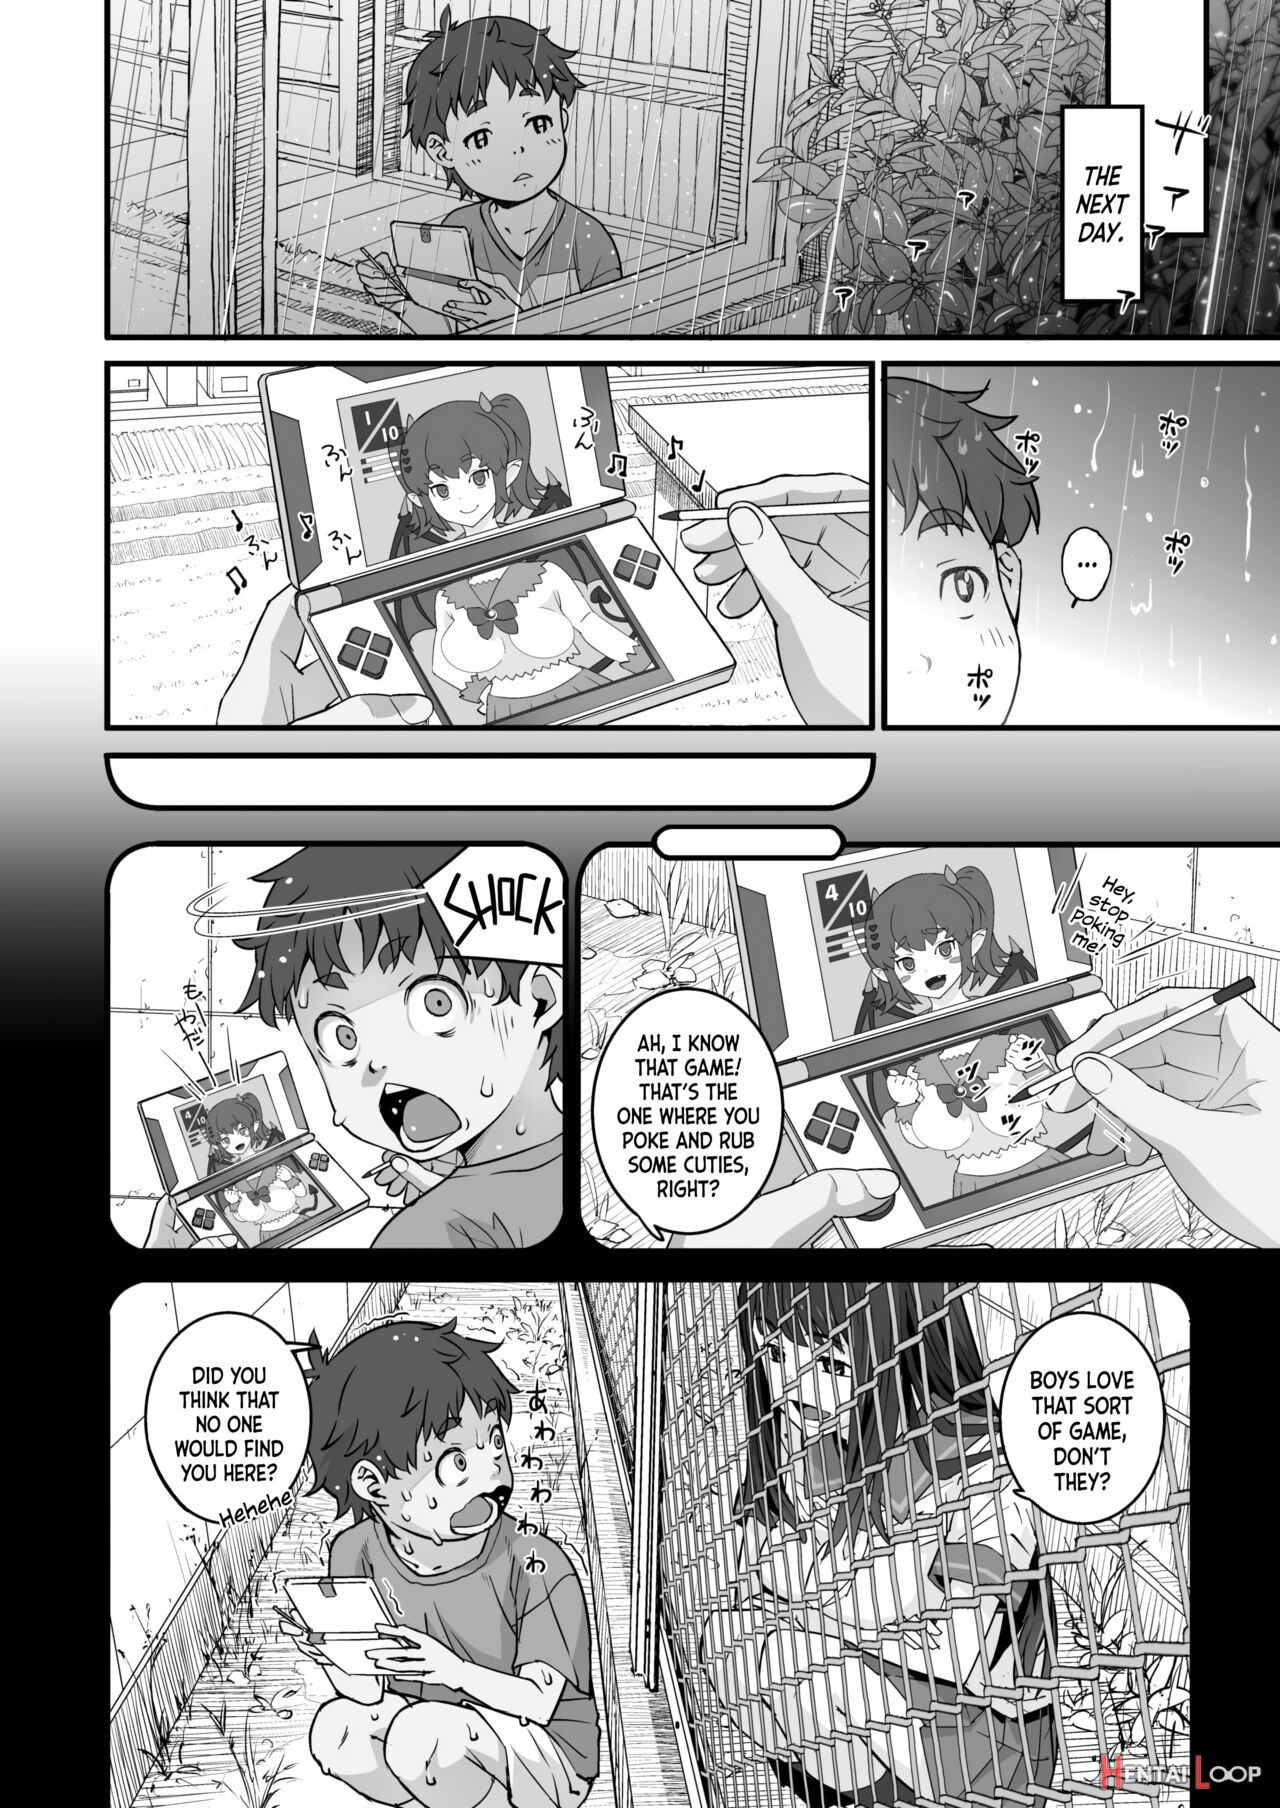 Kanaami Goshi No Natsuyasumi｜summer Break Through The Wire Fence page 4